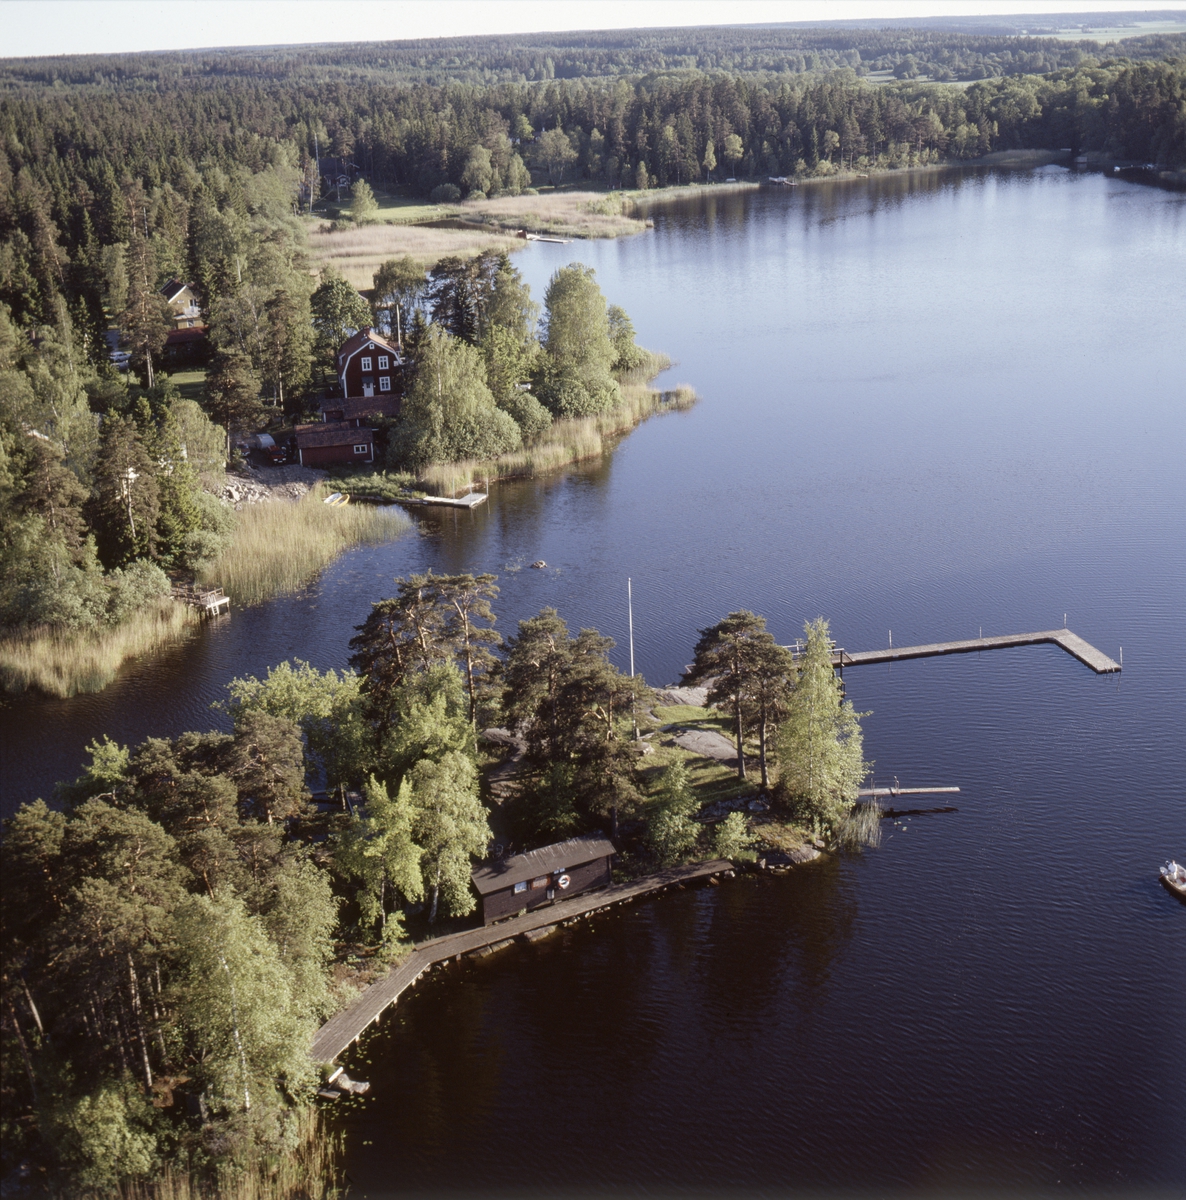 Vy över Tärnholmen i sjön Trehörningen, Marielund, Funbo socken, Uppland juli 1989